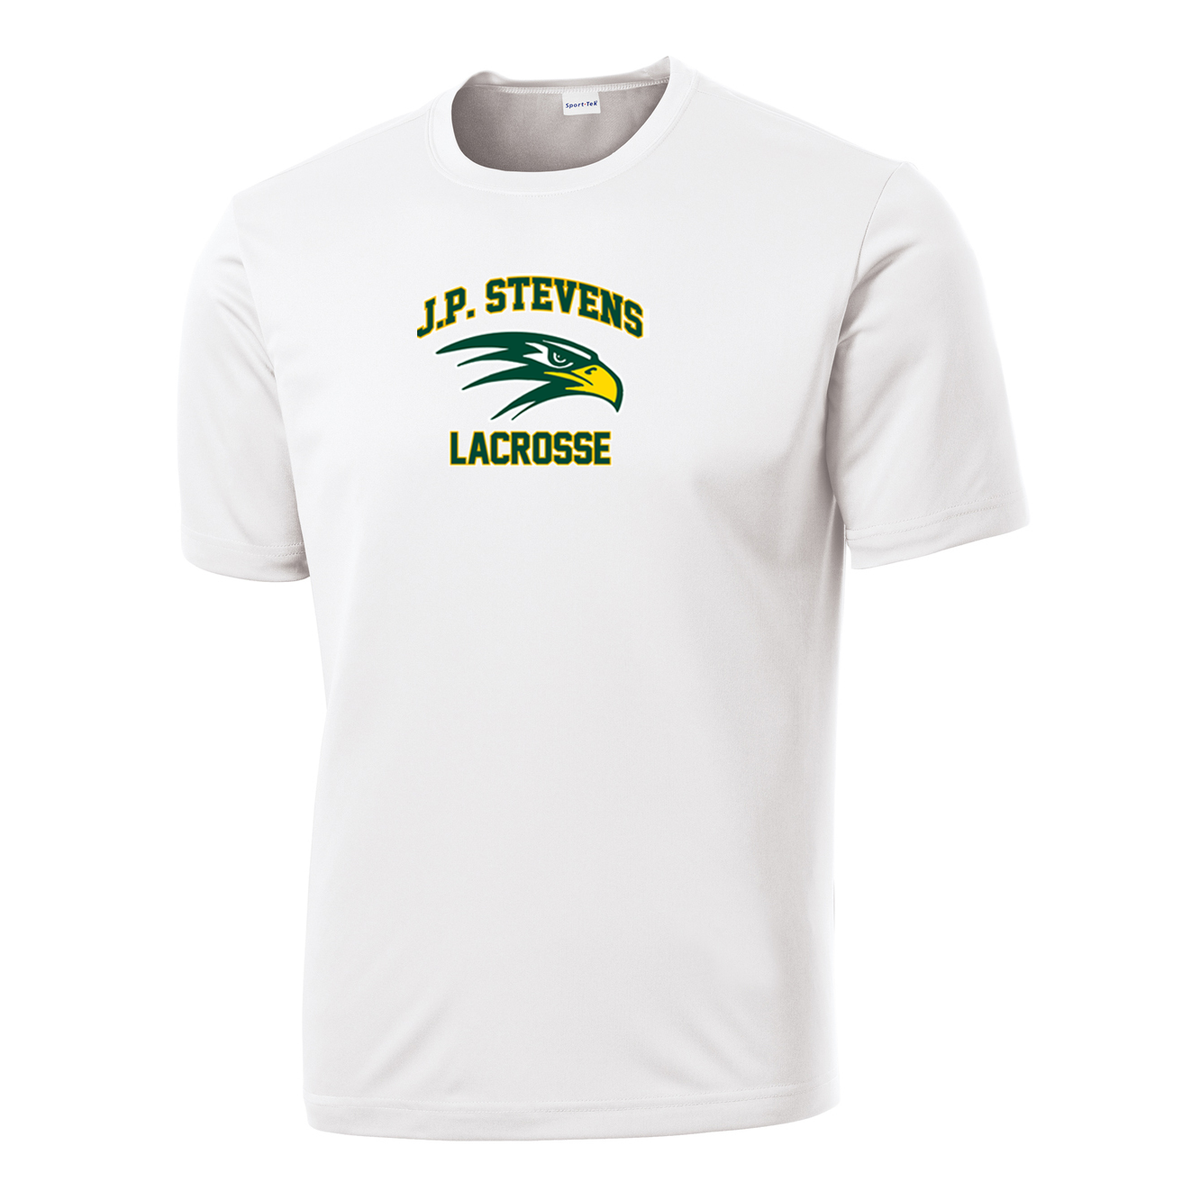 J.P. Stevens Lacrosse Performance T-Shirt